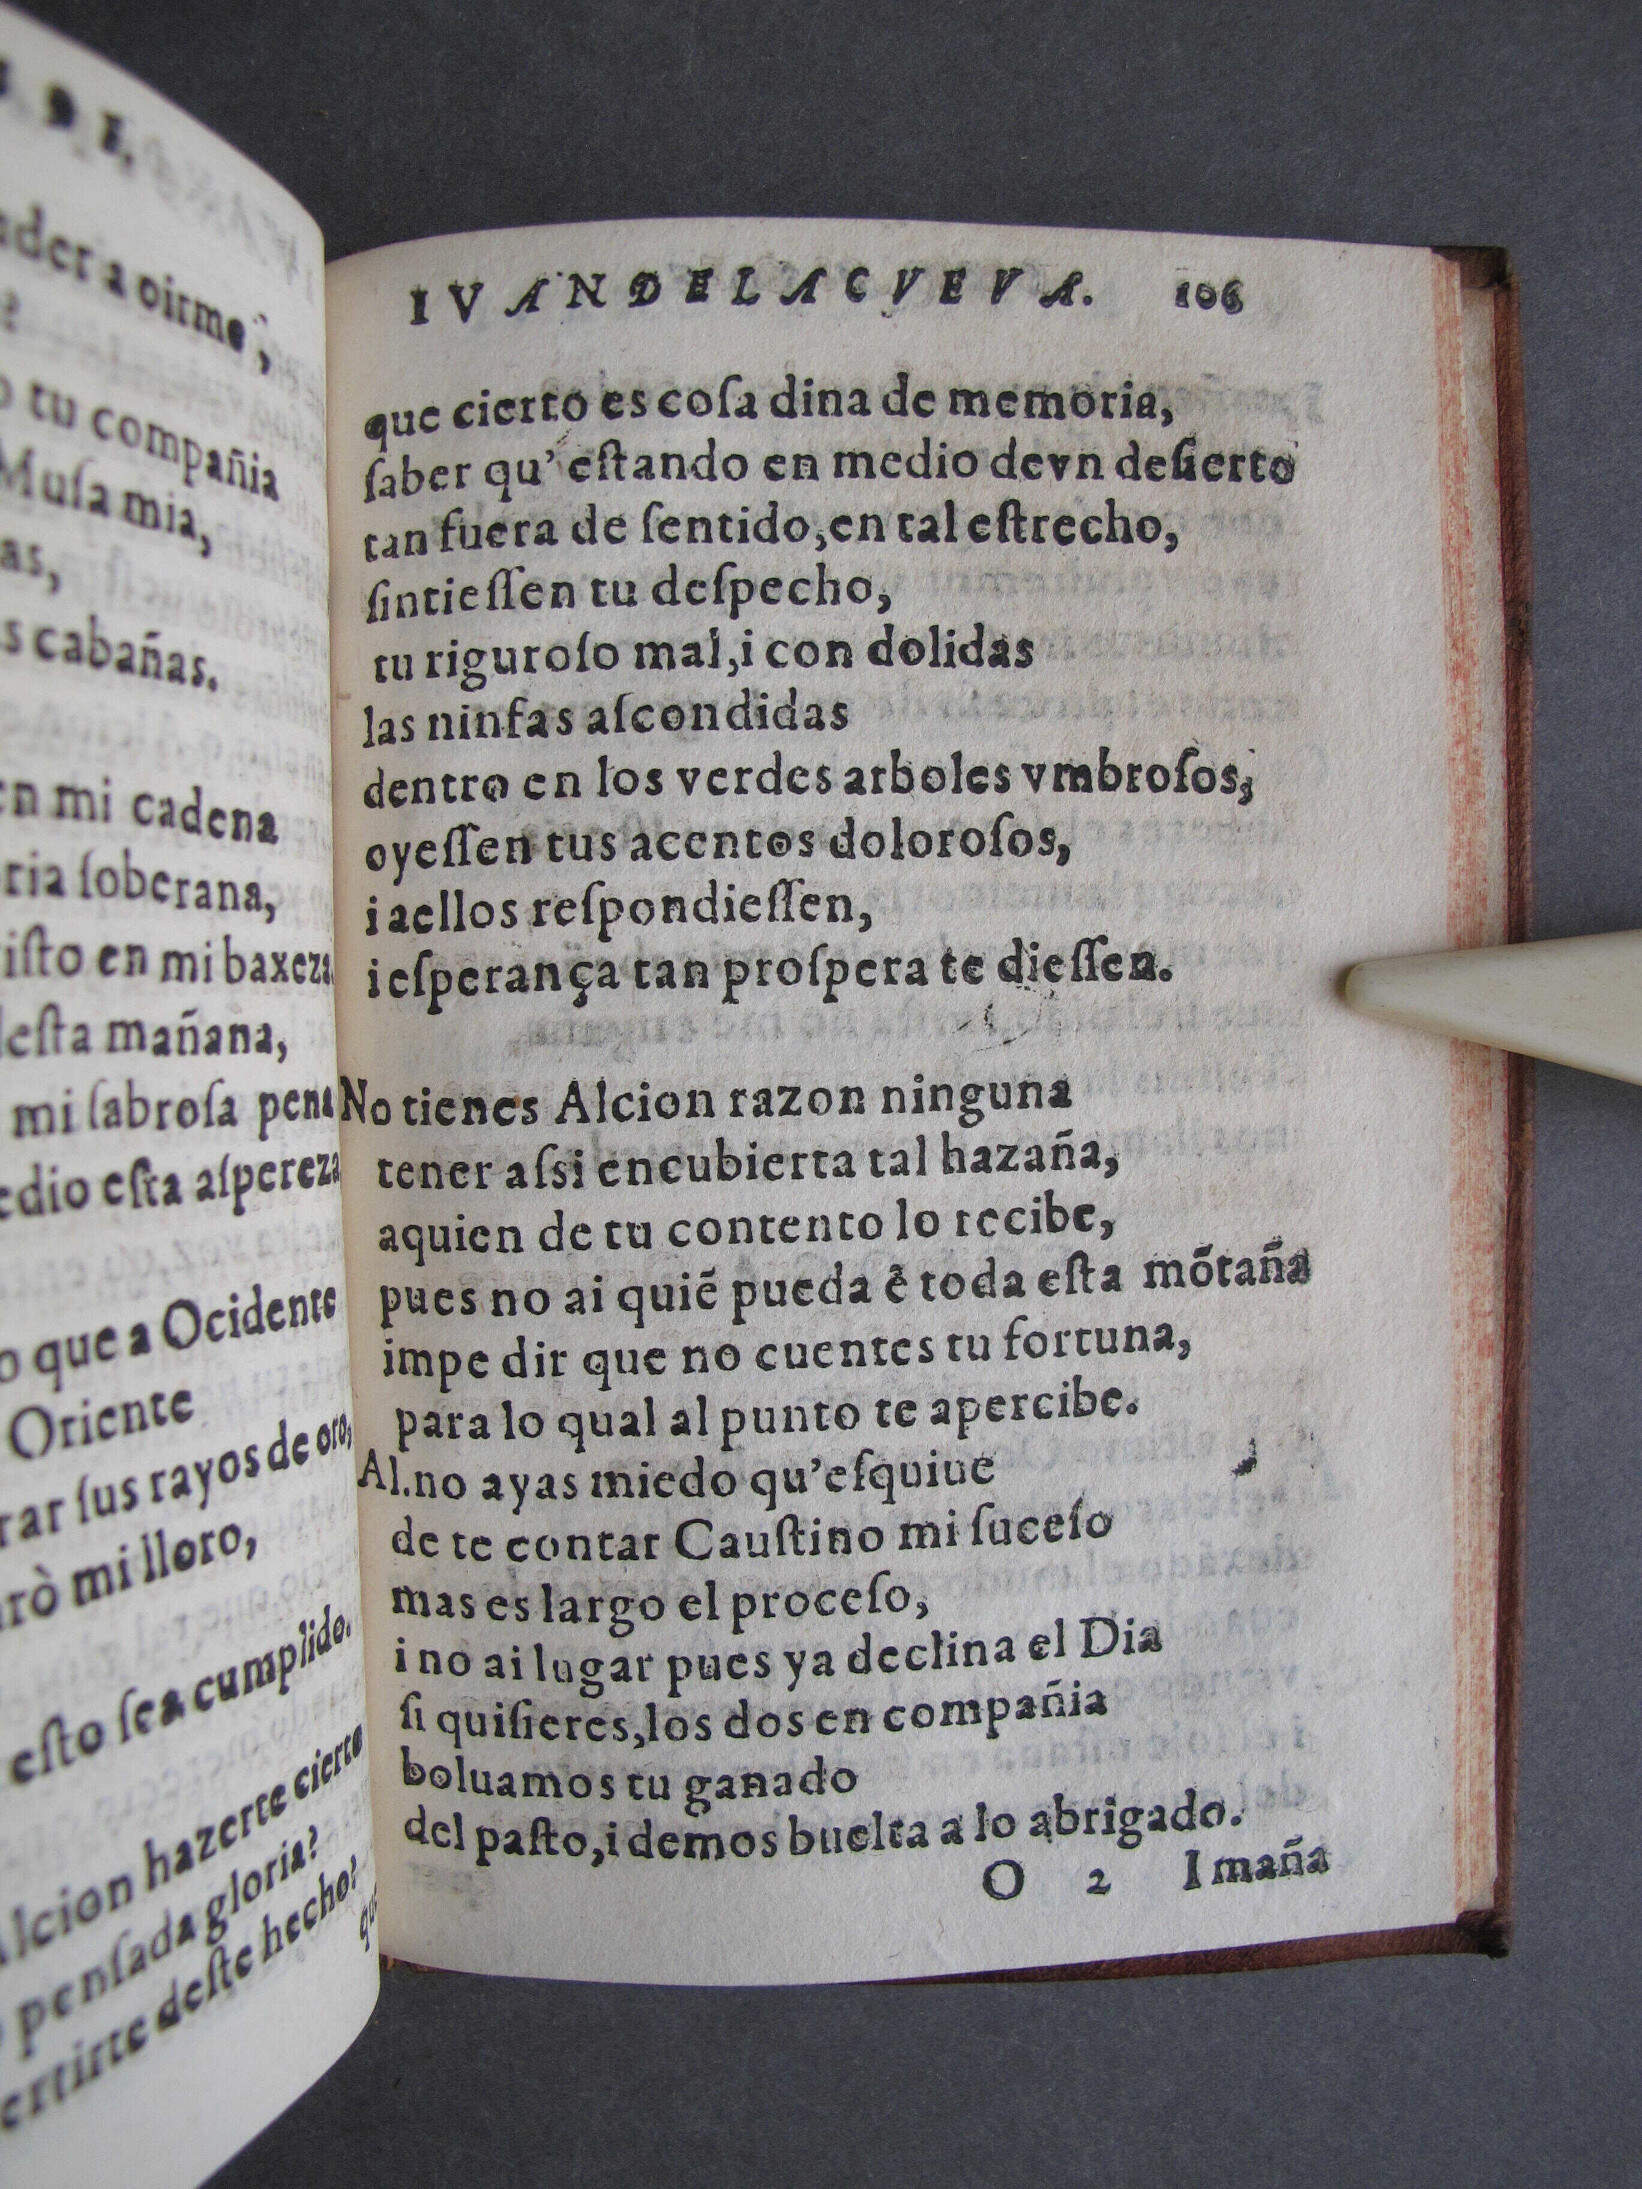 Folio O2